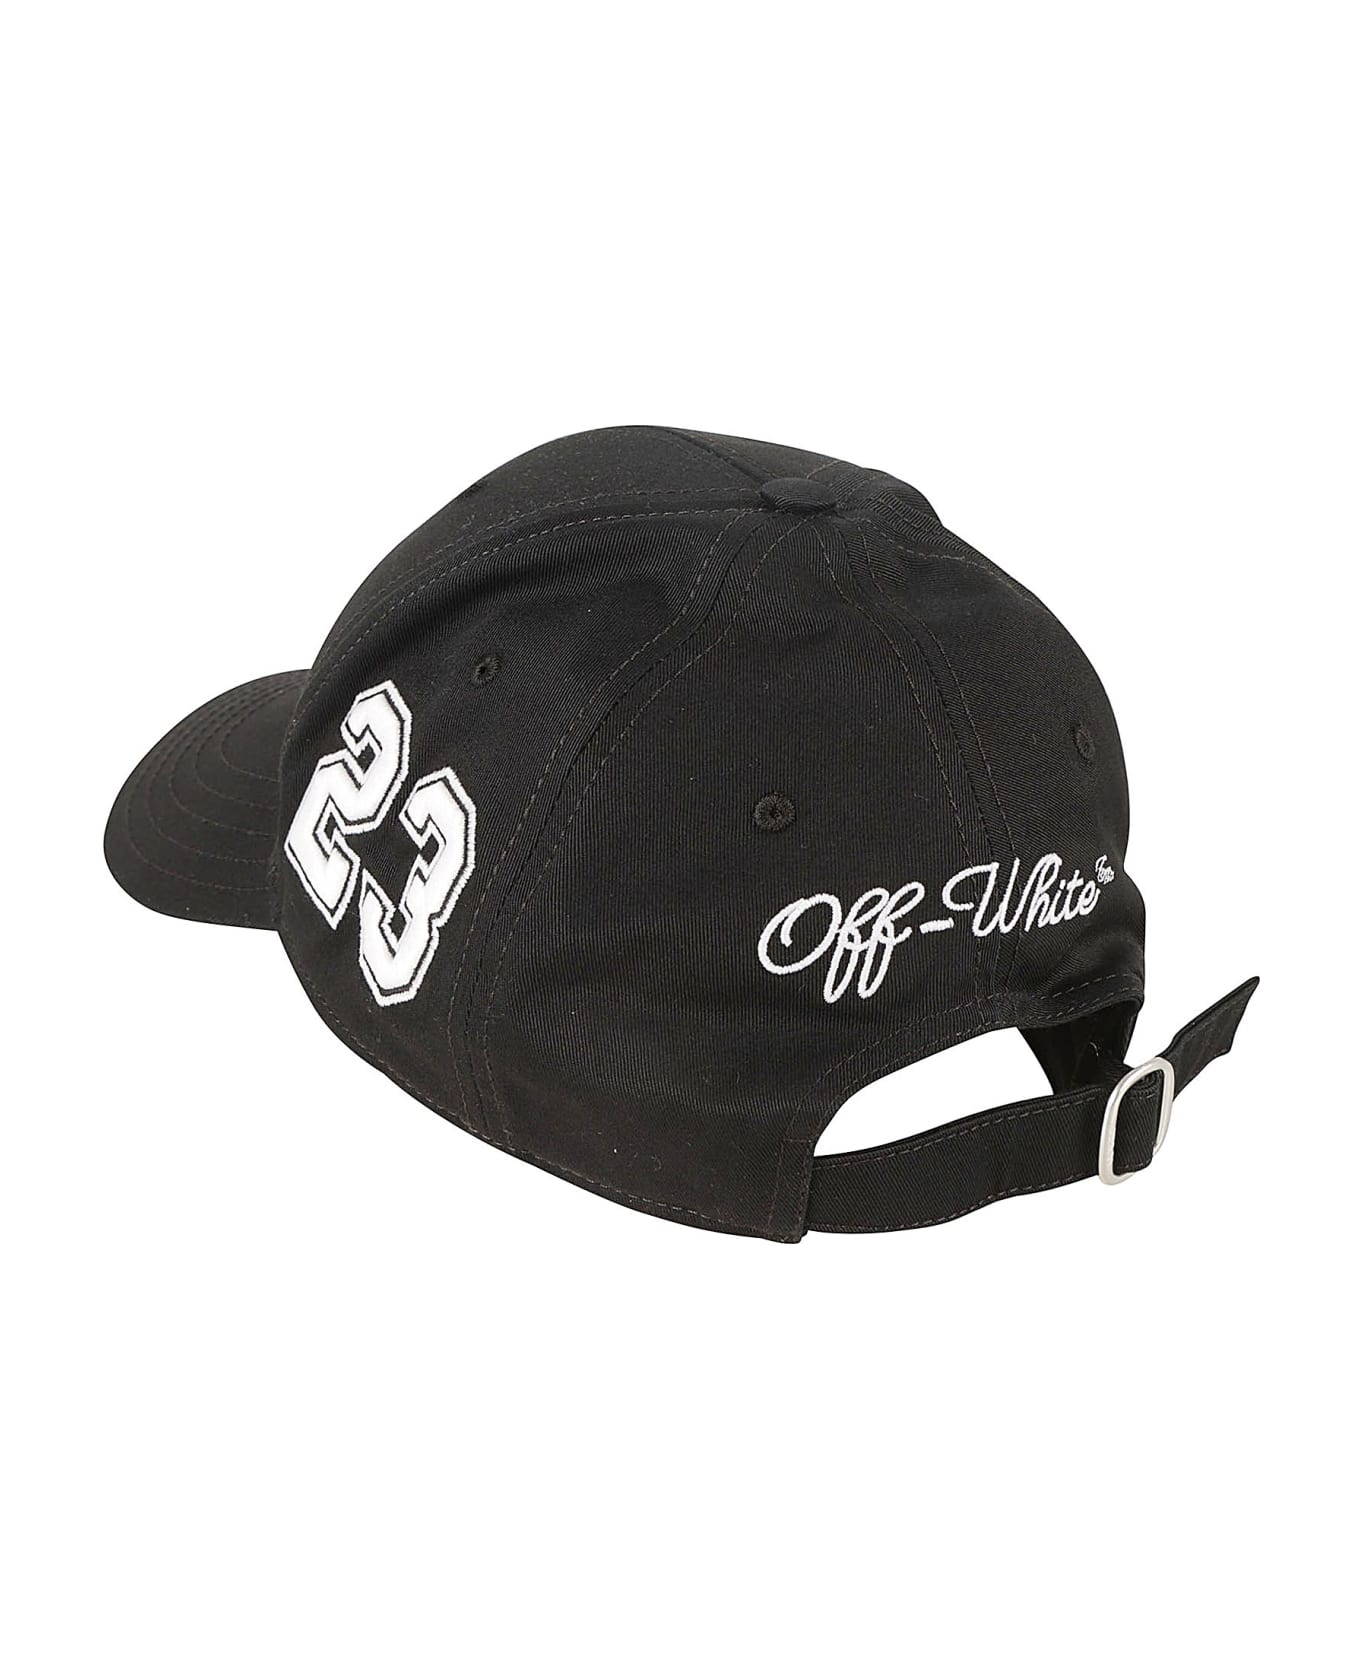 Off-White Multi Logo Baseball Cap - Black/White